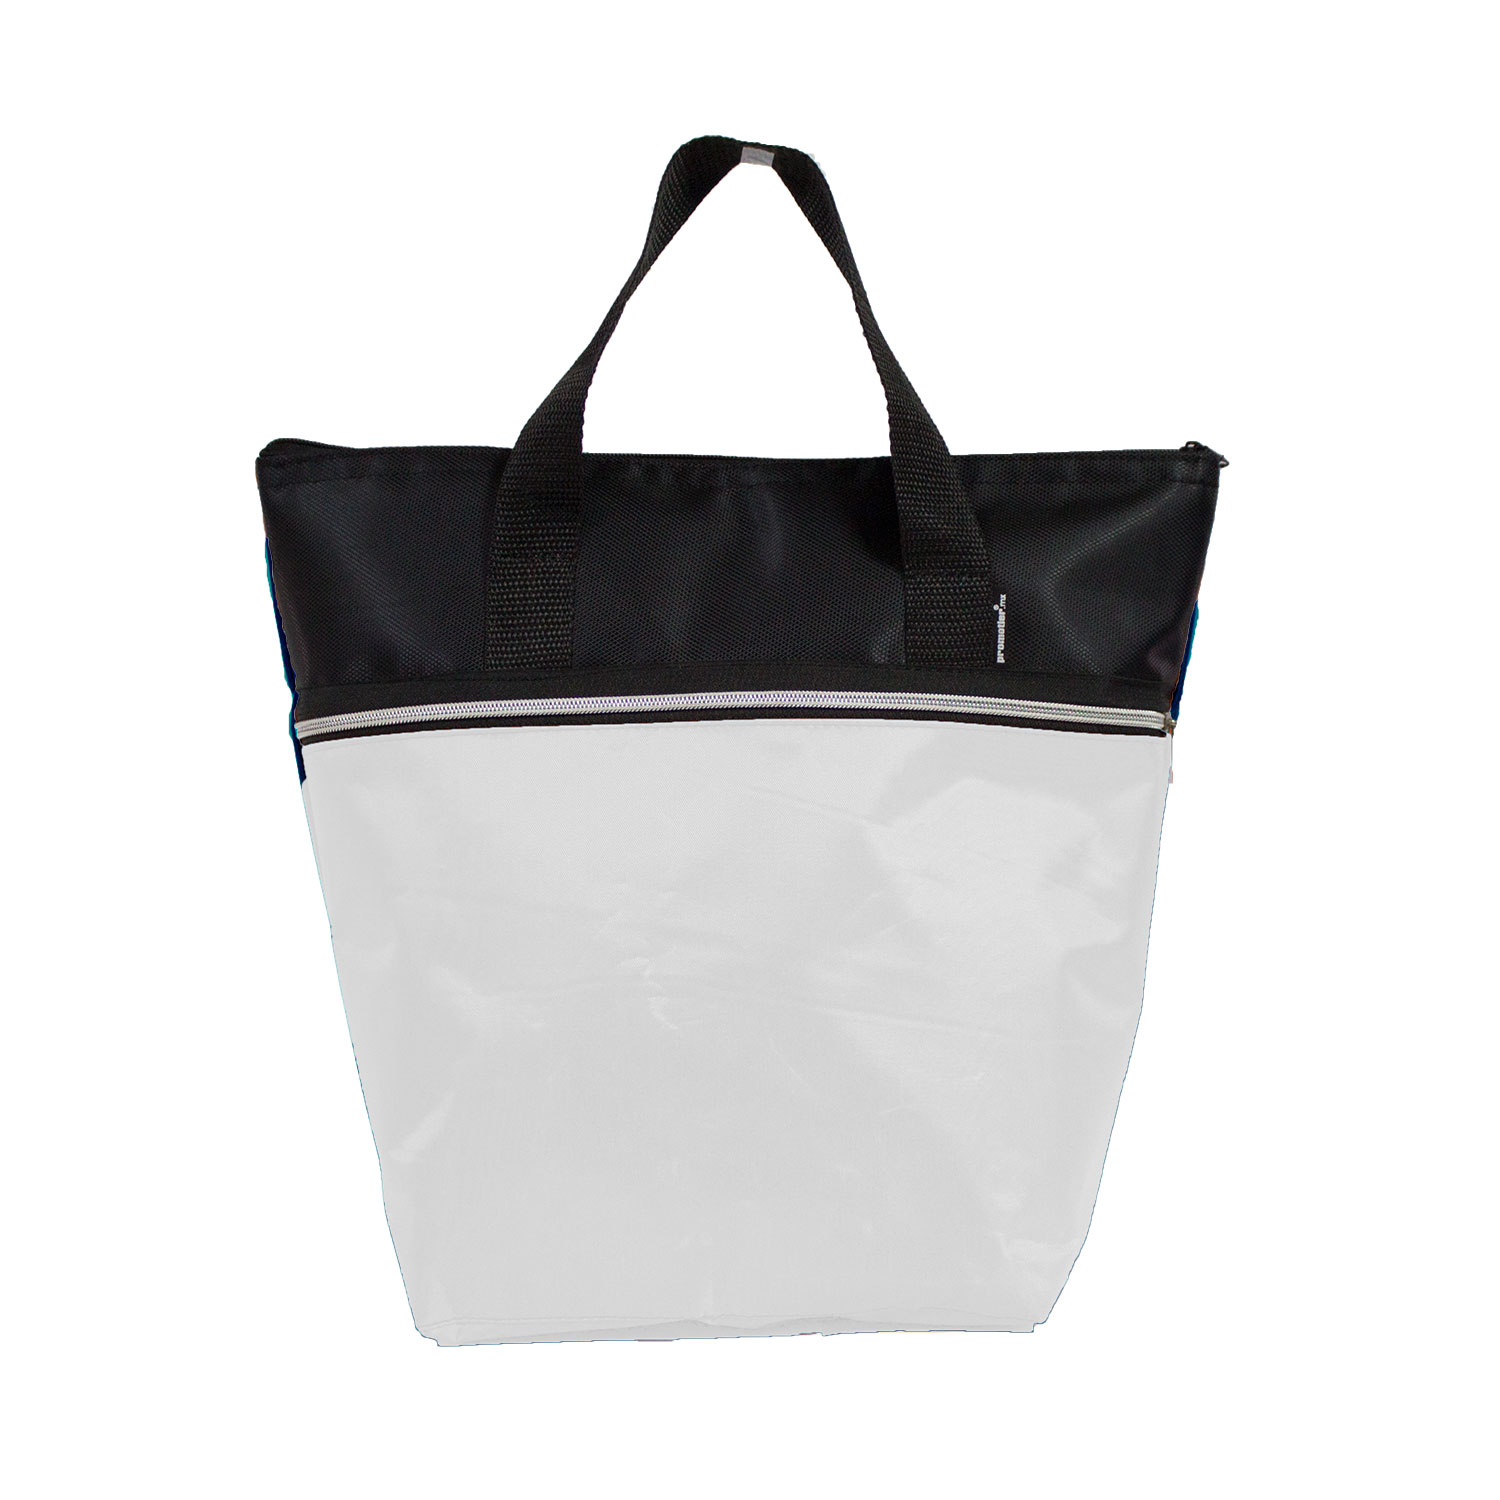 HIELERABEACHBAG, Hielera beachbag 12 pack termoahulada con bolsa interior aprovada por la FDA para contener aliementos y bebidas.